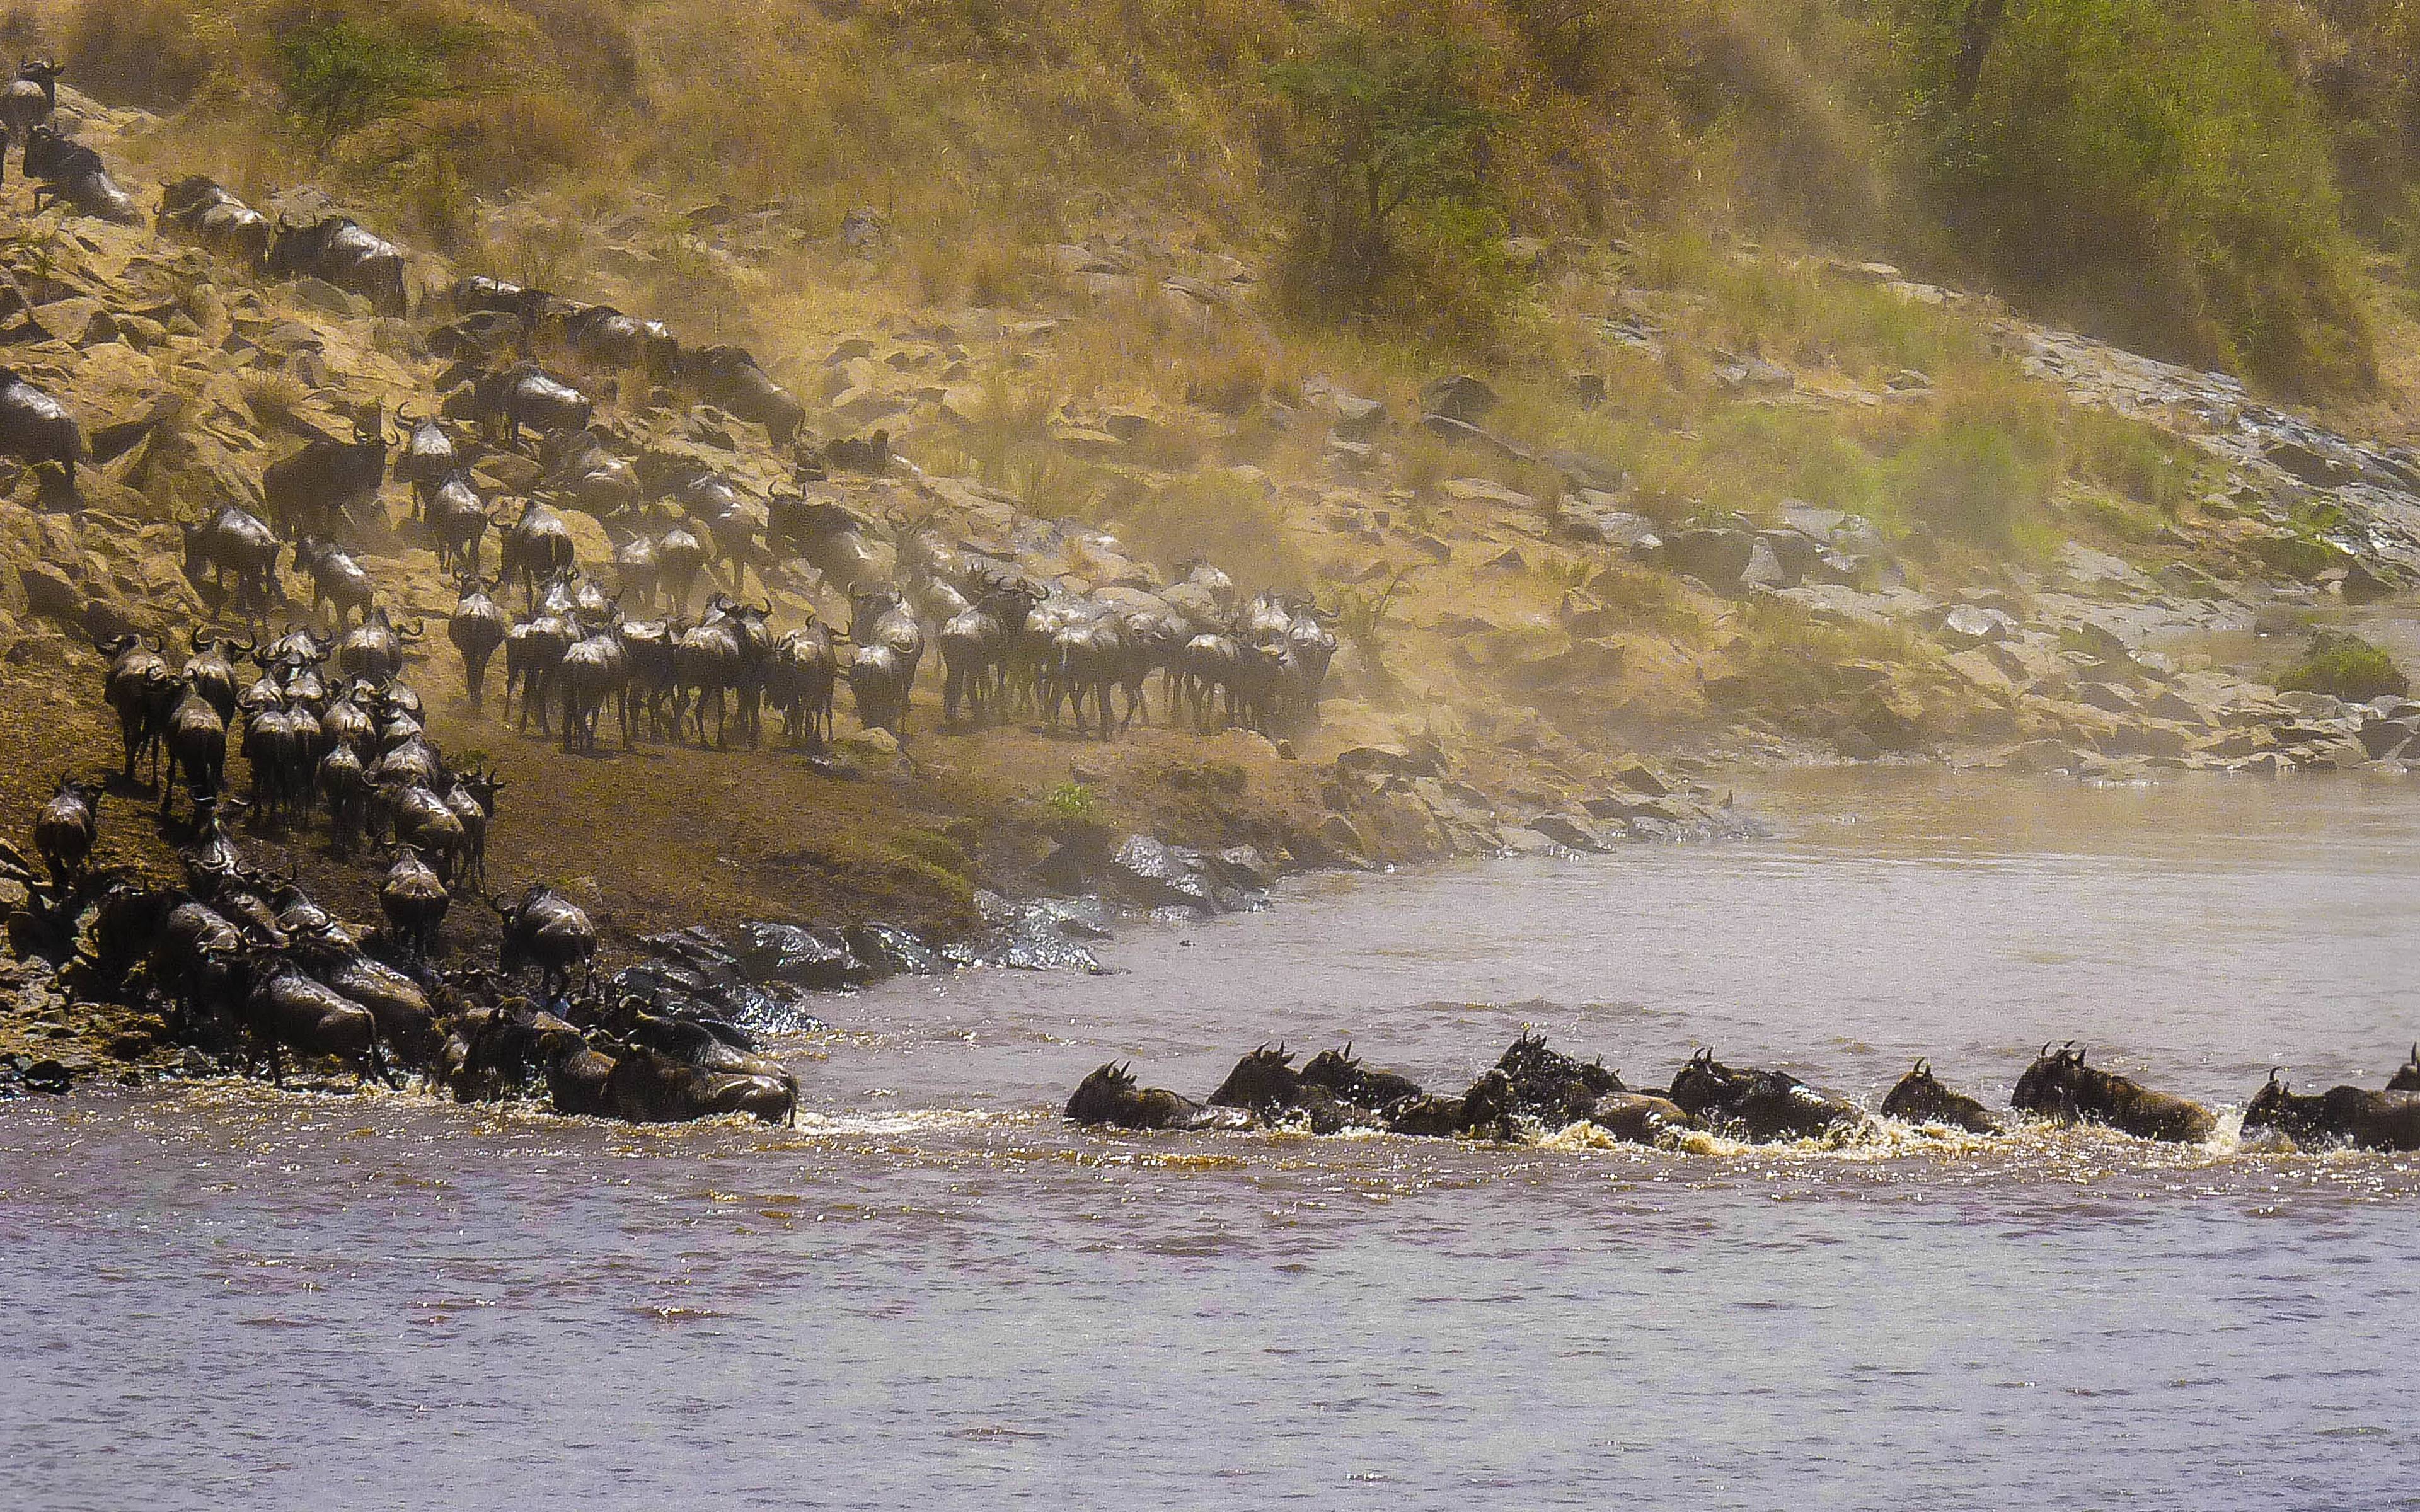 Seguendo la migrazione nel Serengeti